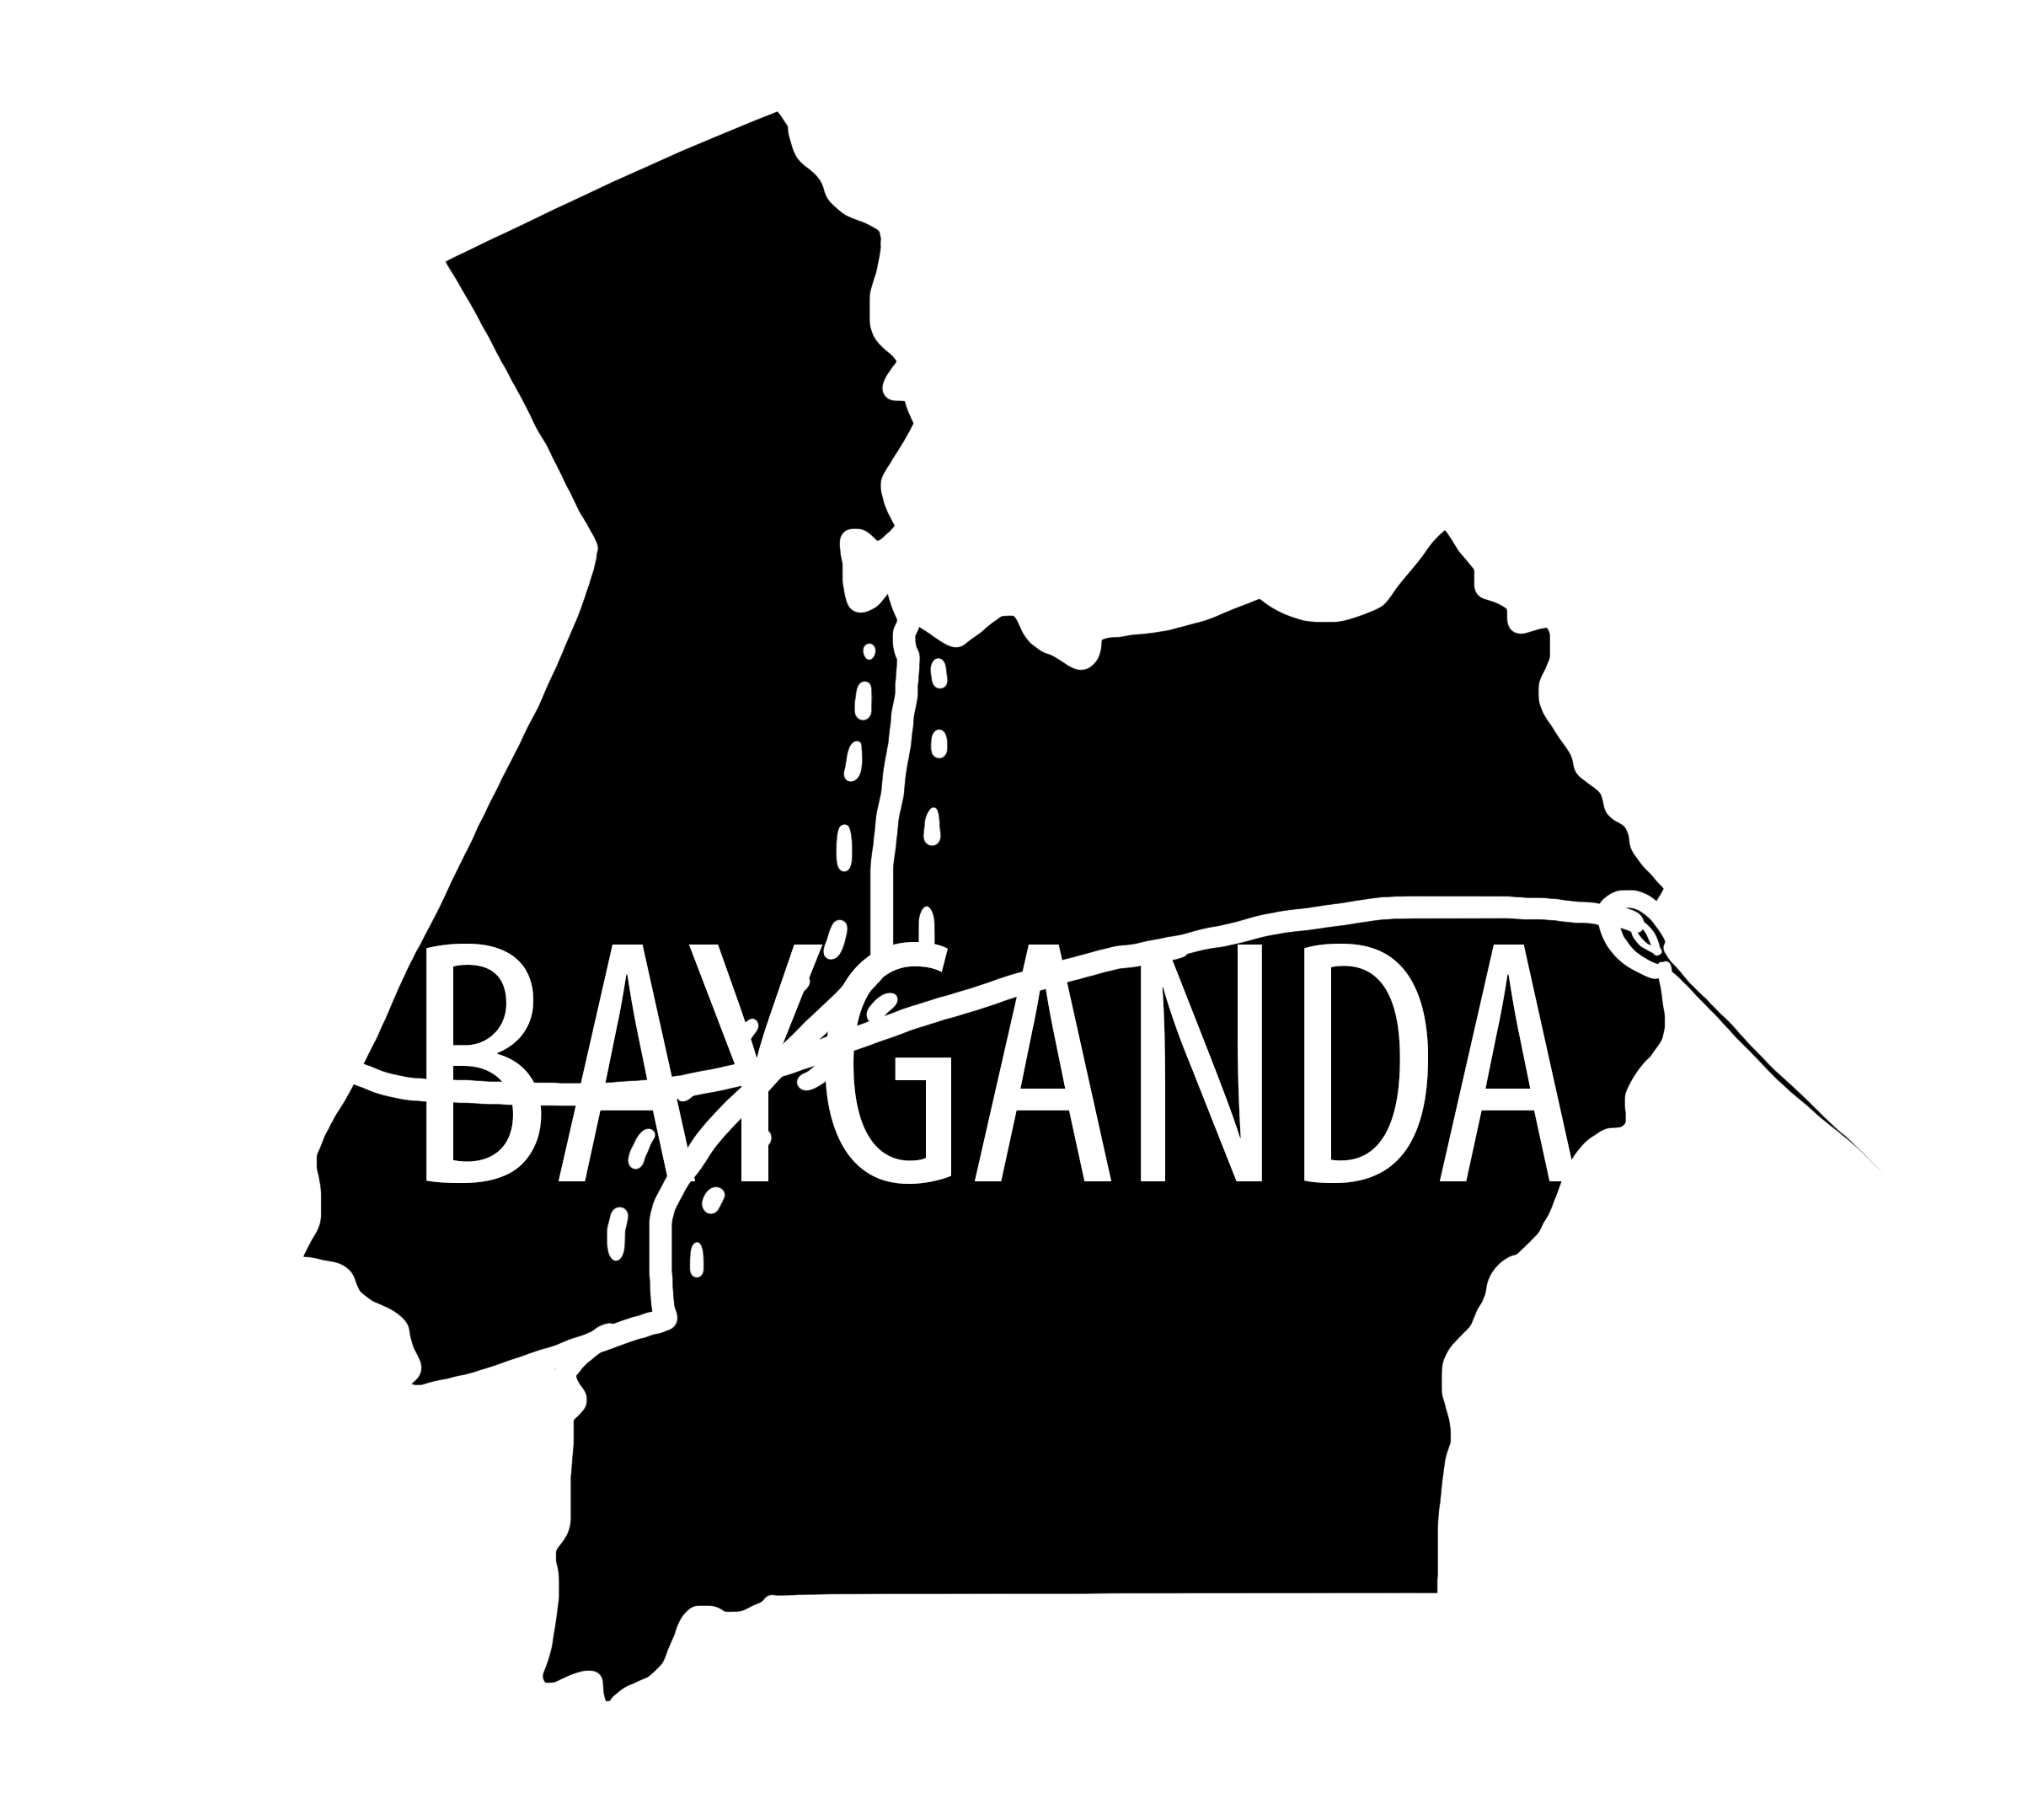 BayGanda Foundation